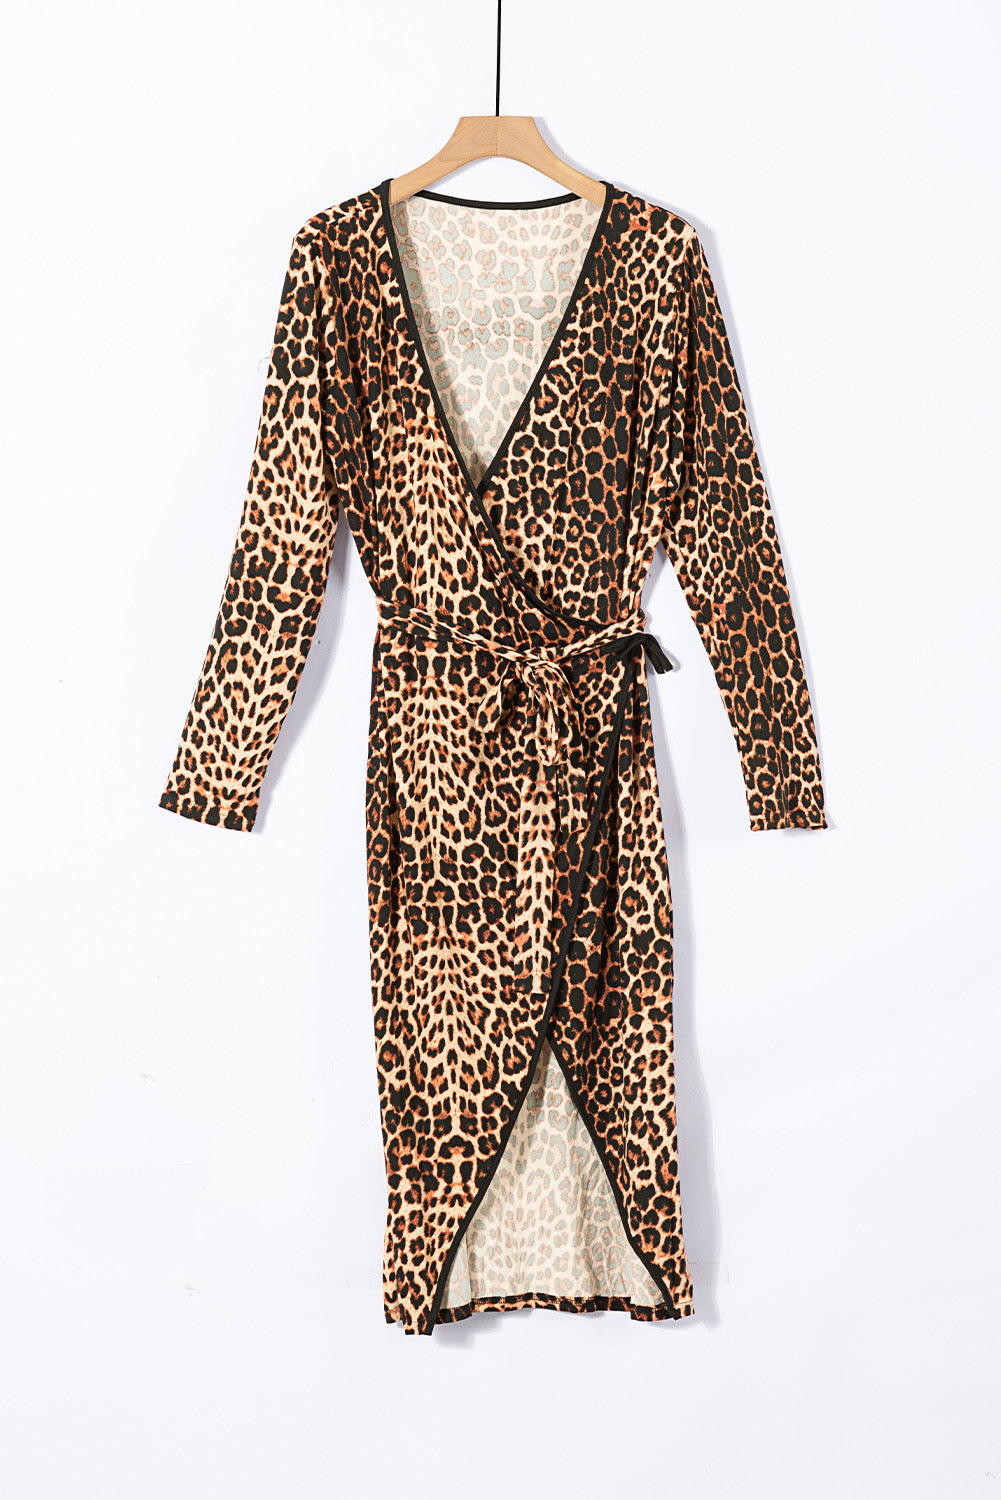 Wild Dreams Leopard V Neck Plus size Dress